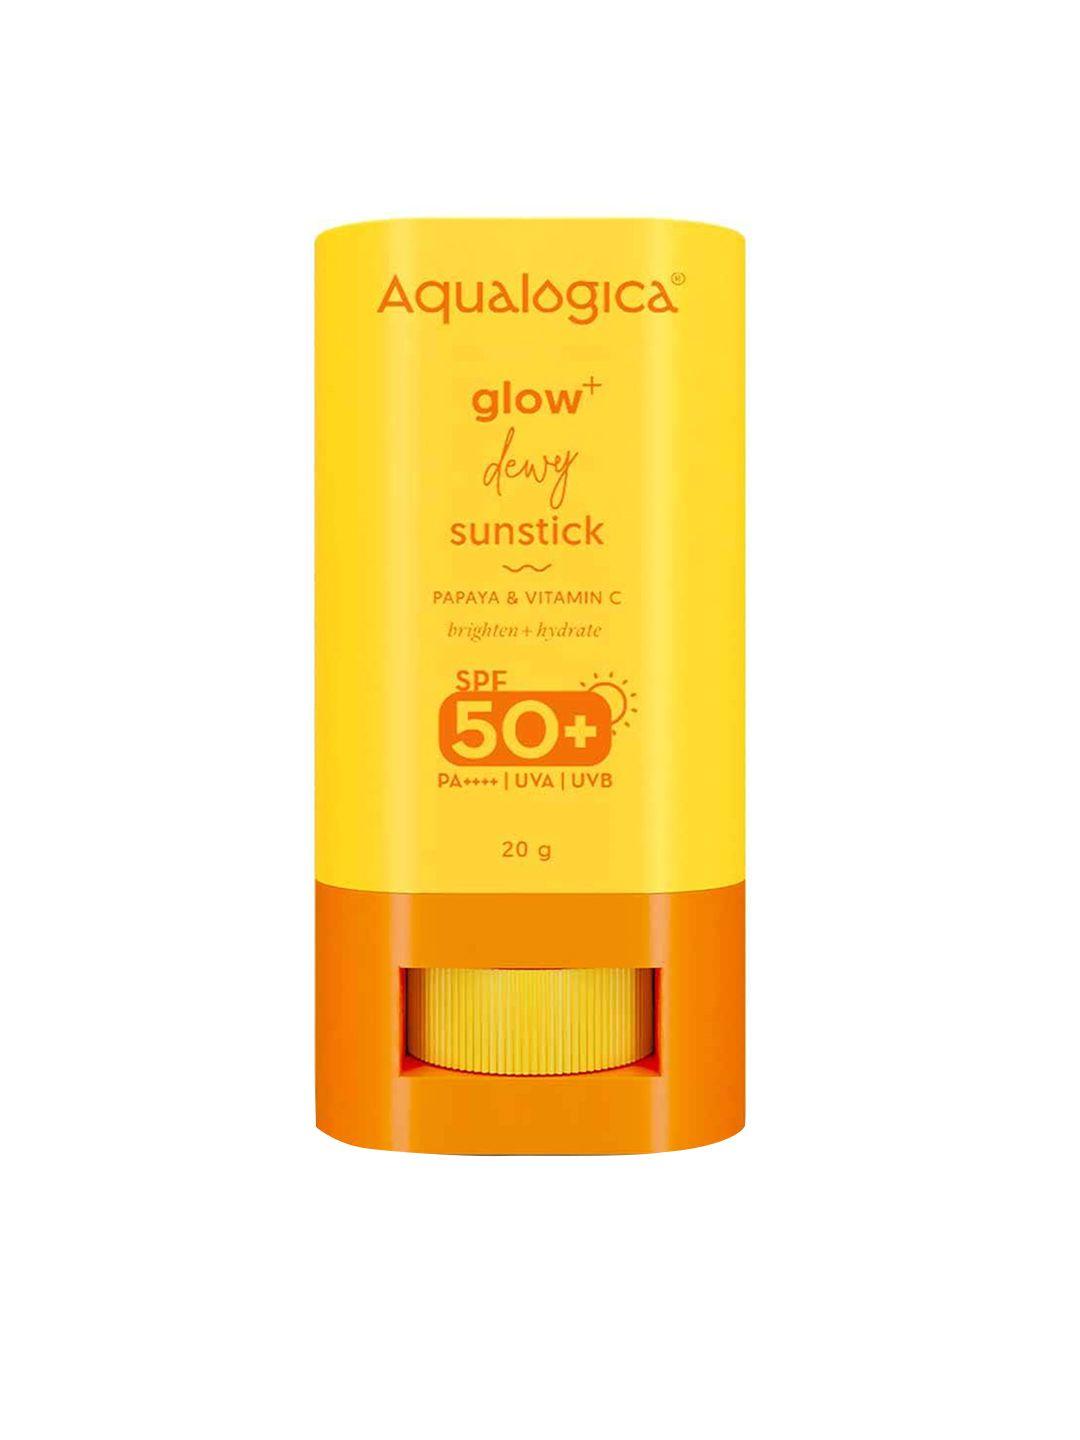 aqualogica-glow+-dewy-spf50+-sunstick-with-papaya-&-vitamin-c---20g